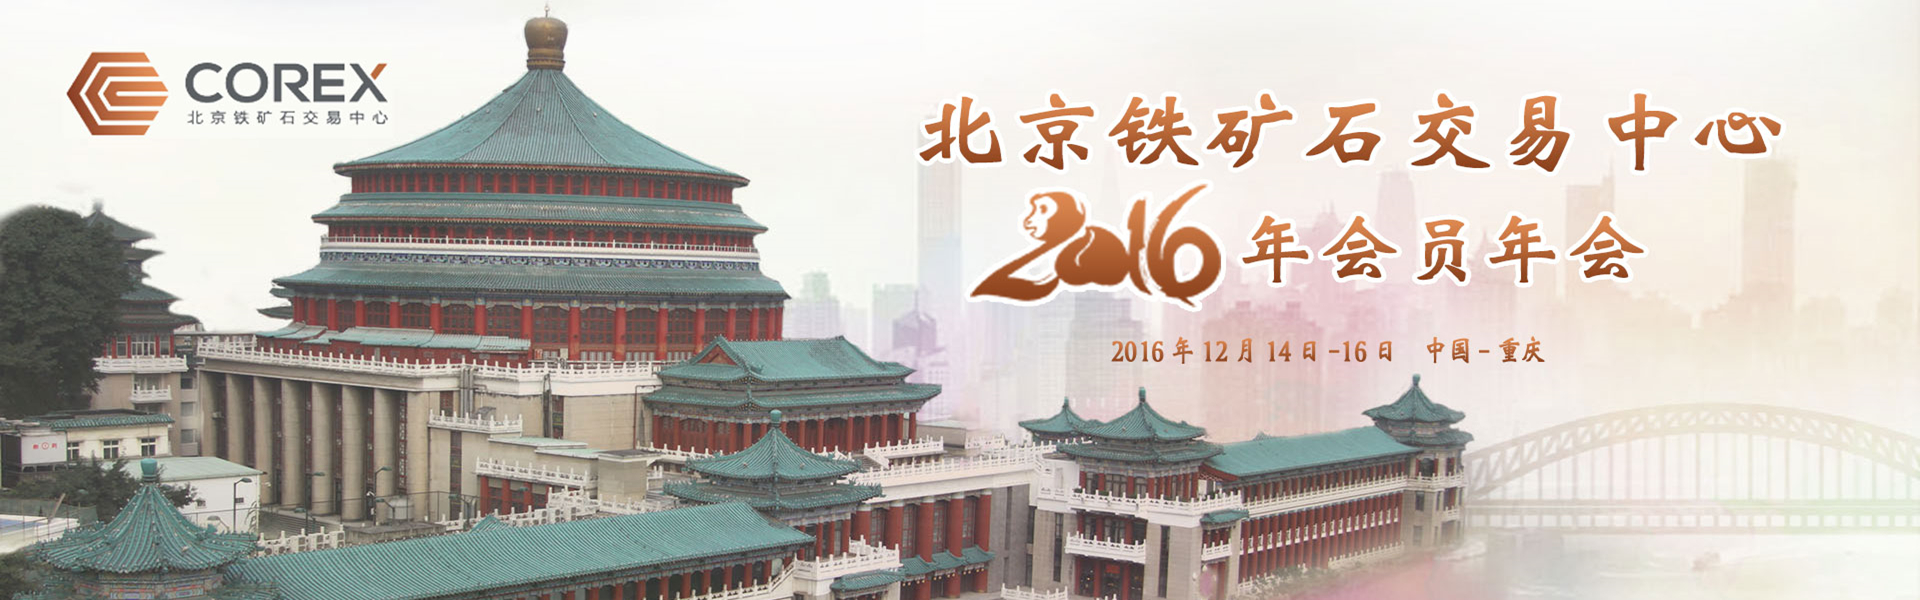 北京铁矿石交易中心2016年会员年会